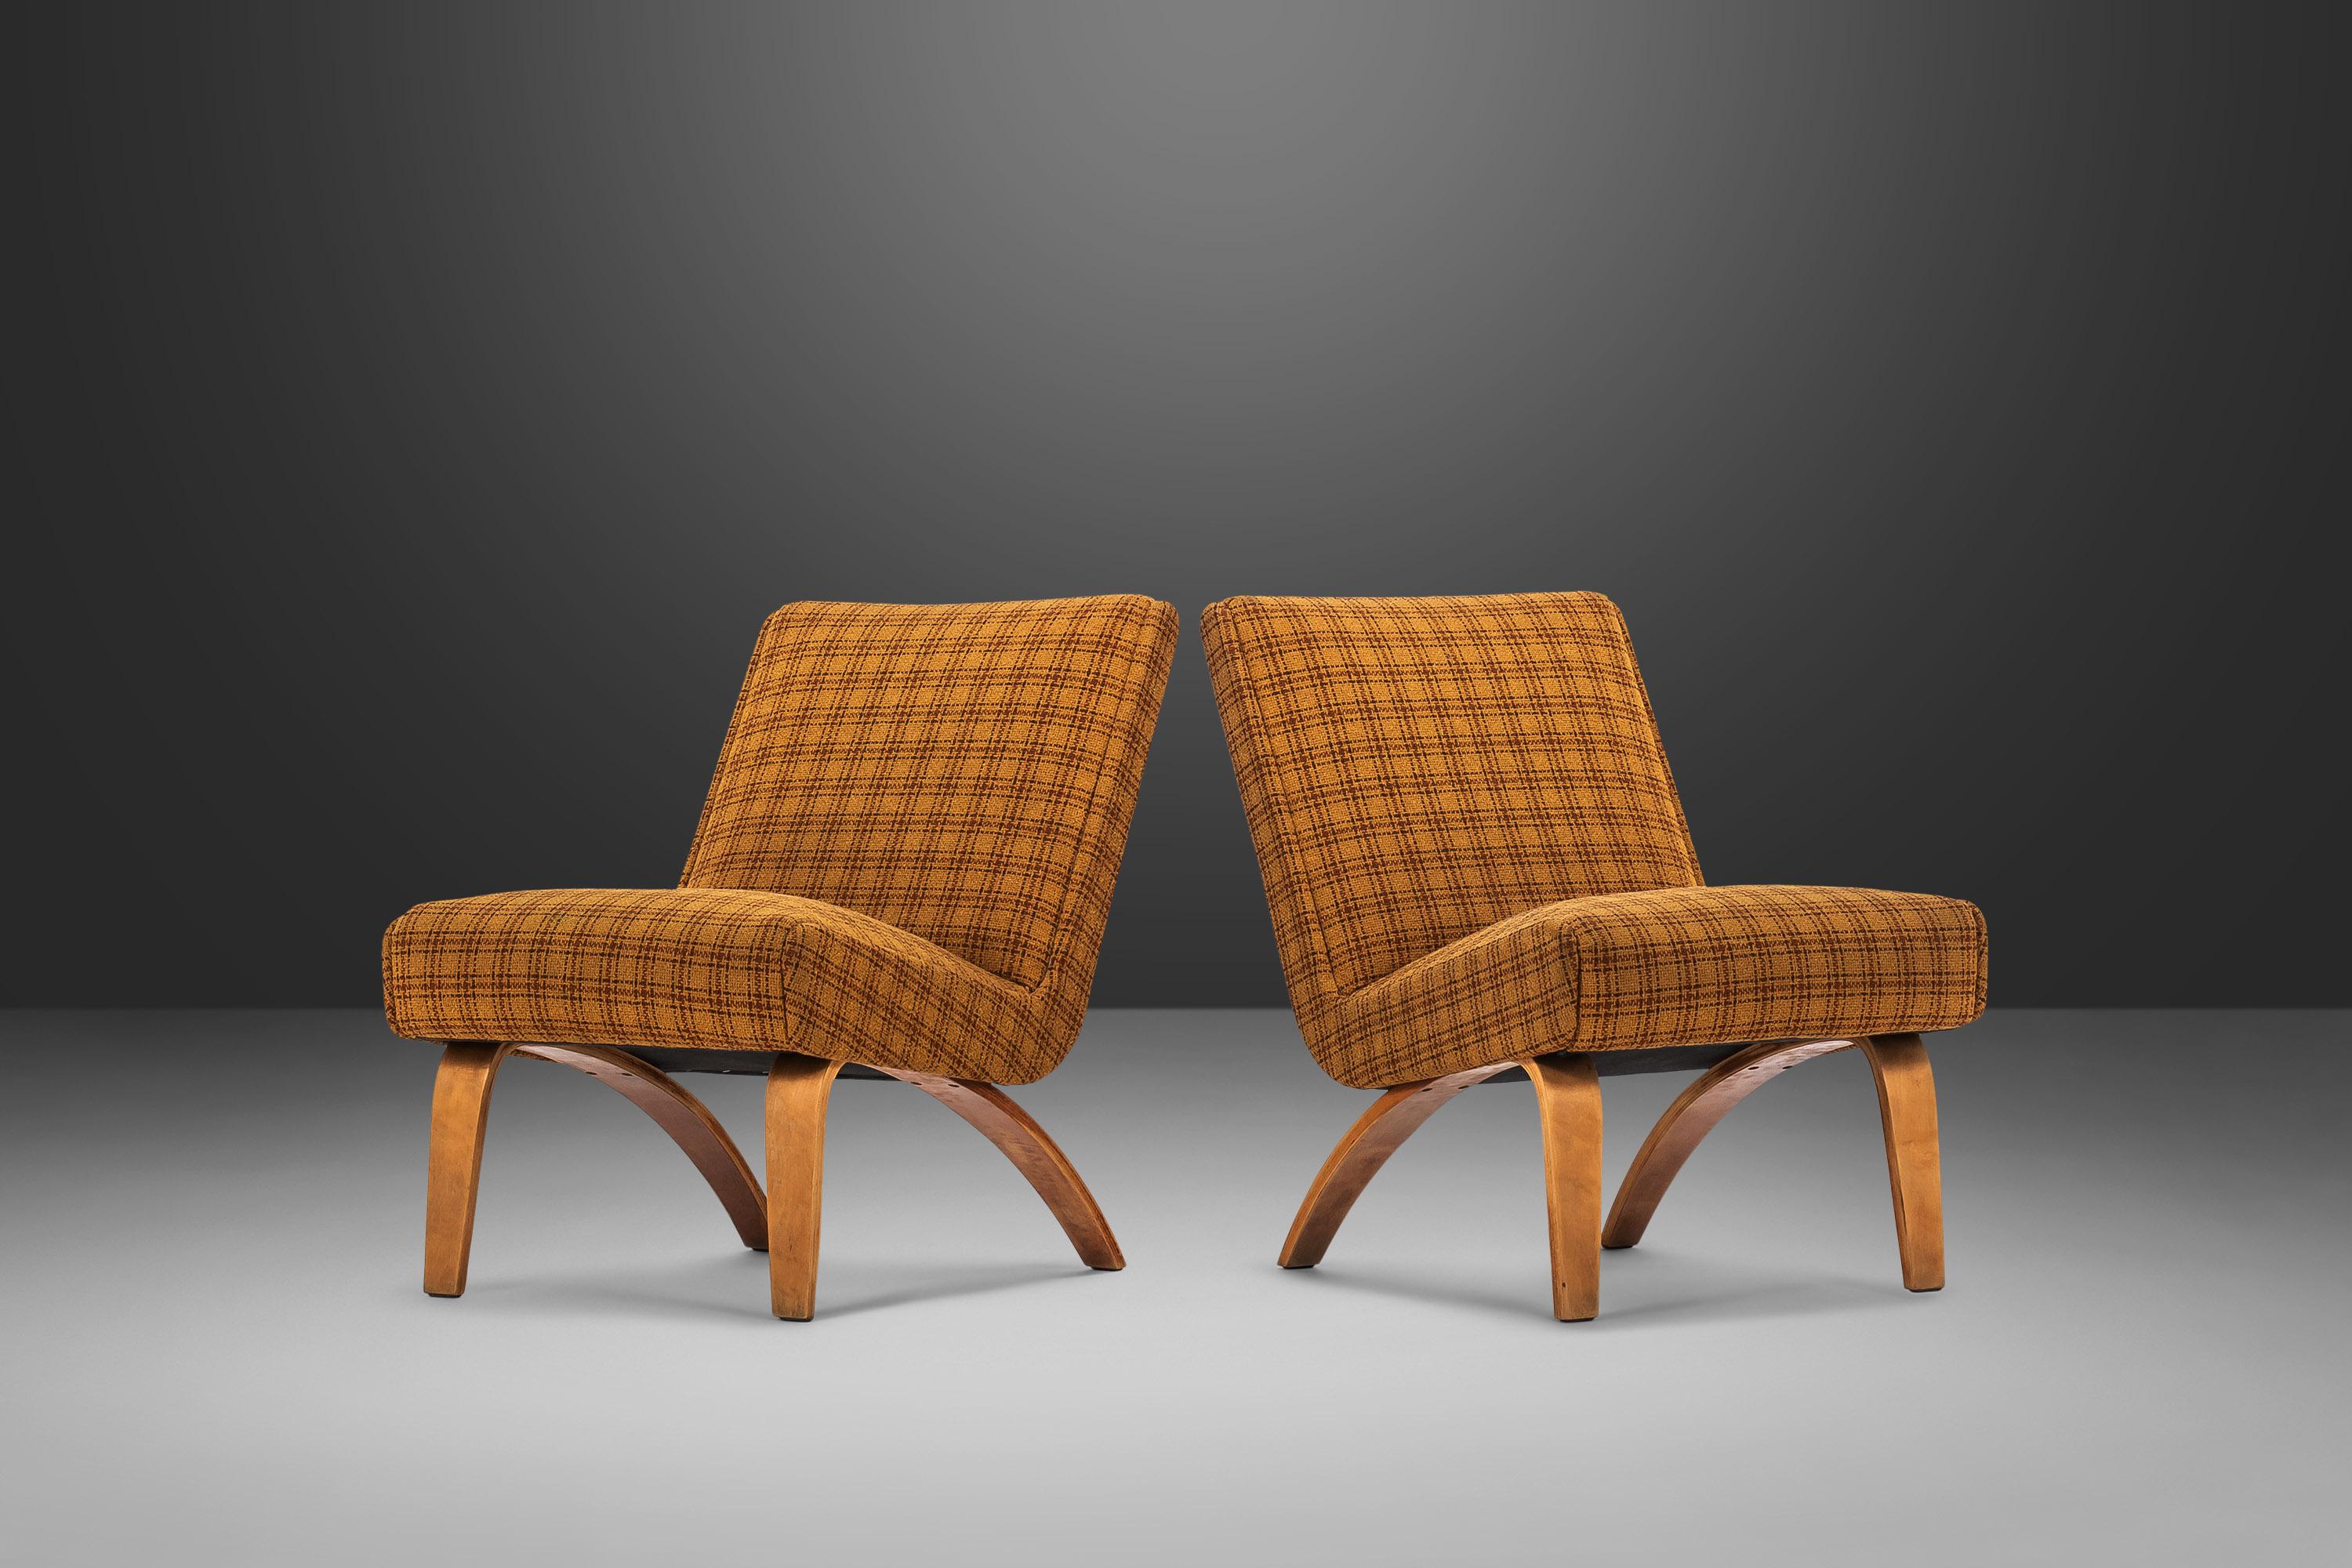 Confort. Tissu vintage. Pieds en bois courbé captivants. Ces deux chaises pantoufles sont le complément parfait de tout espace nécessitant une touche de couleur et/ou un encombrement minimal. La tapisserie à carreaux jaune originale donne à ces